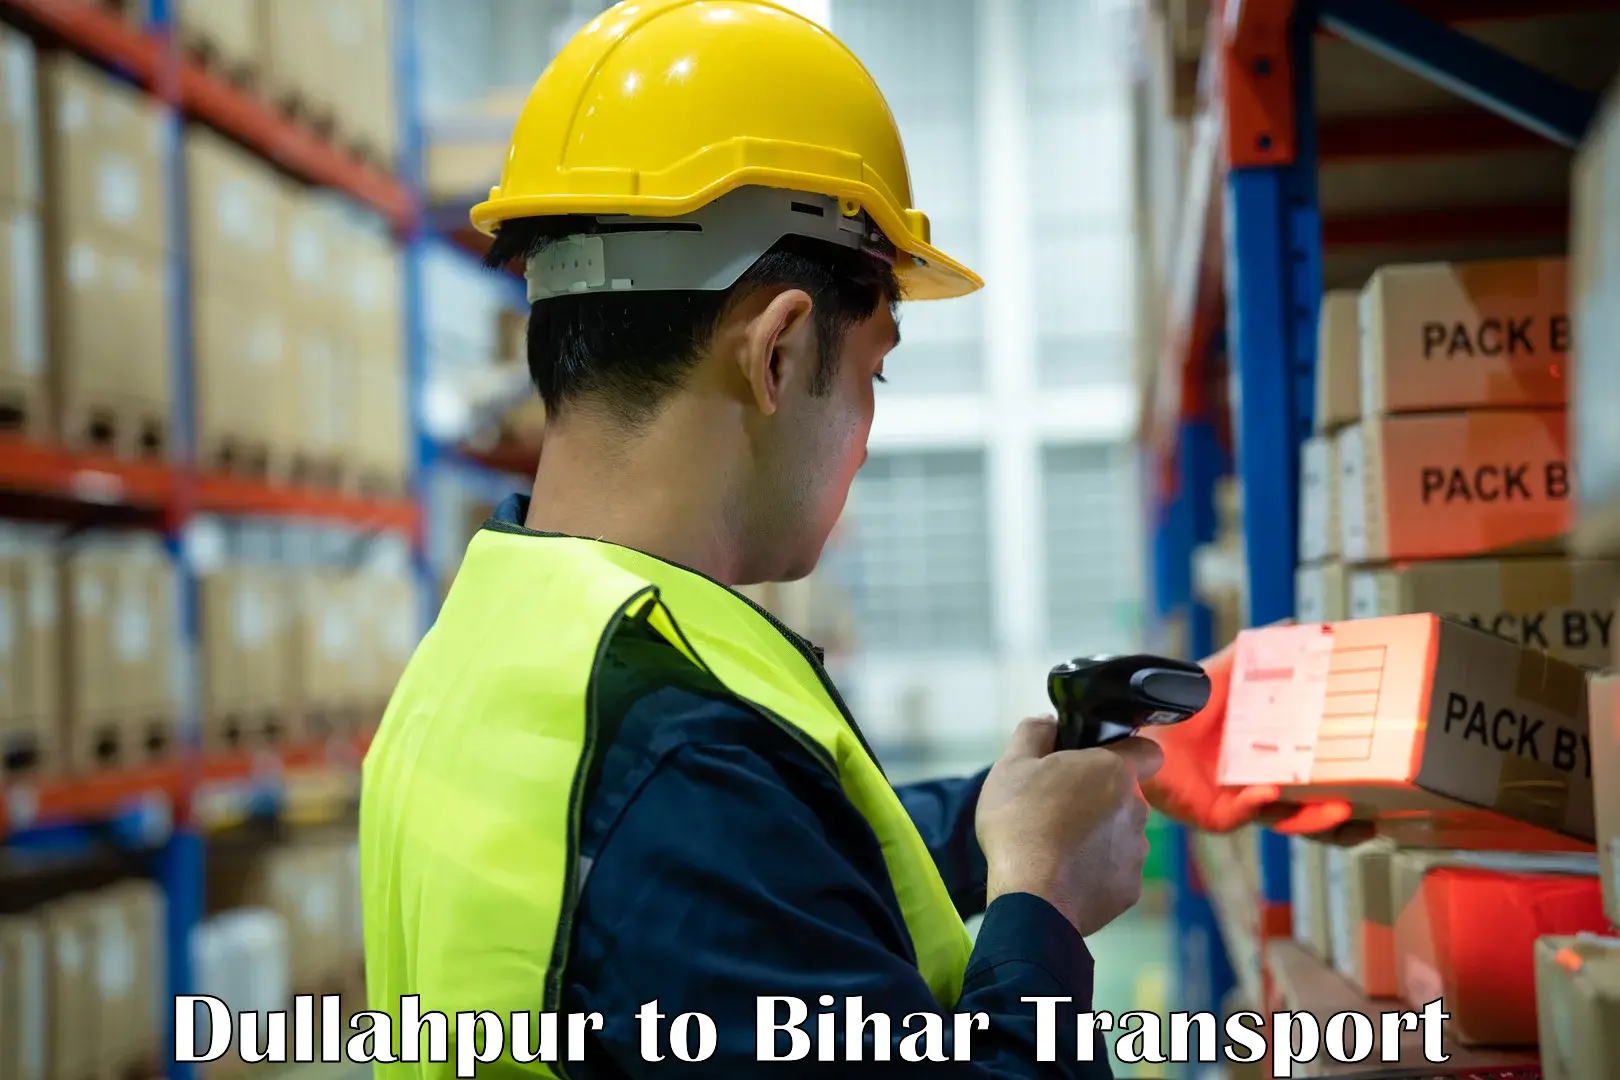 Cargo transportation services Dullahpur to Saraiya